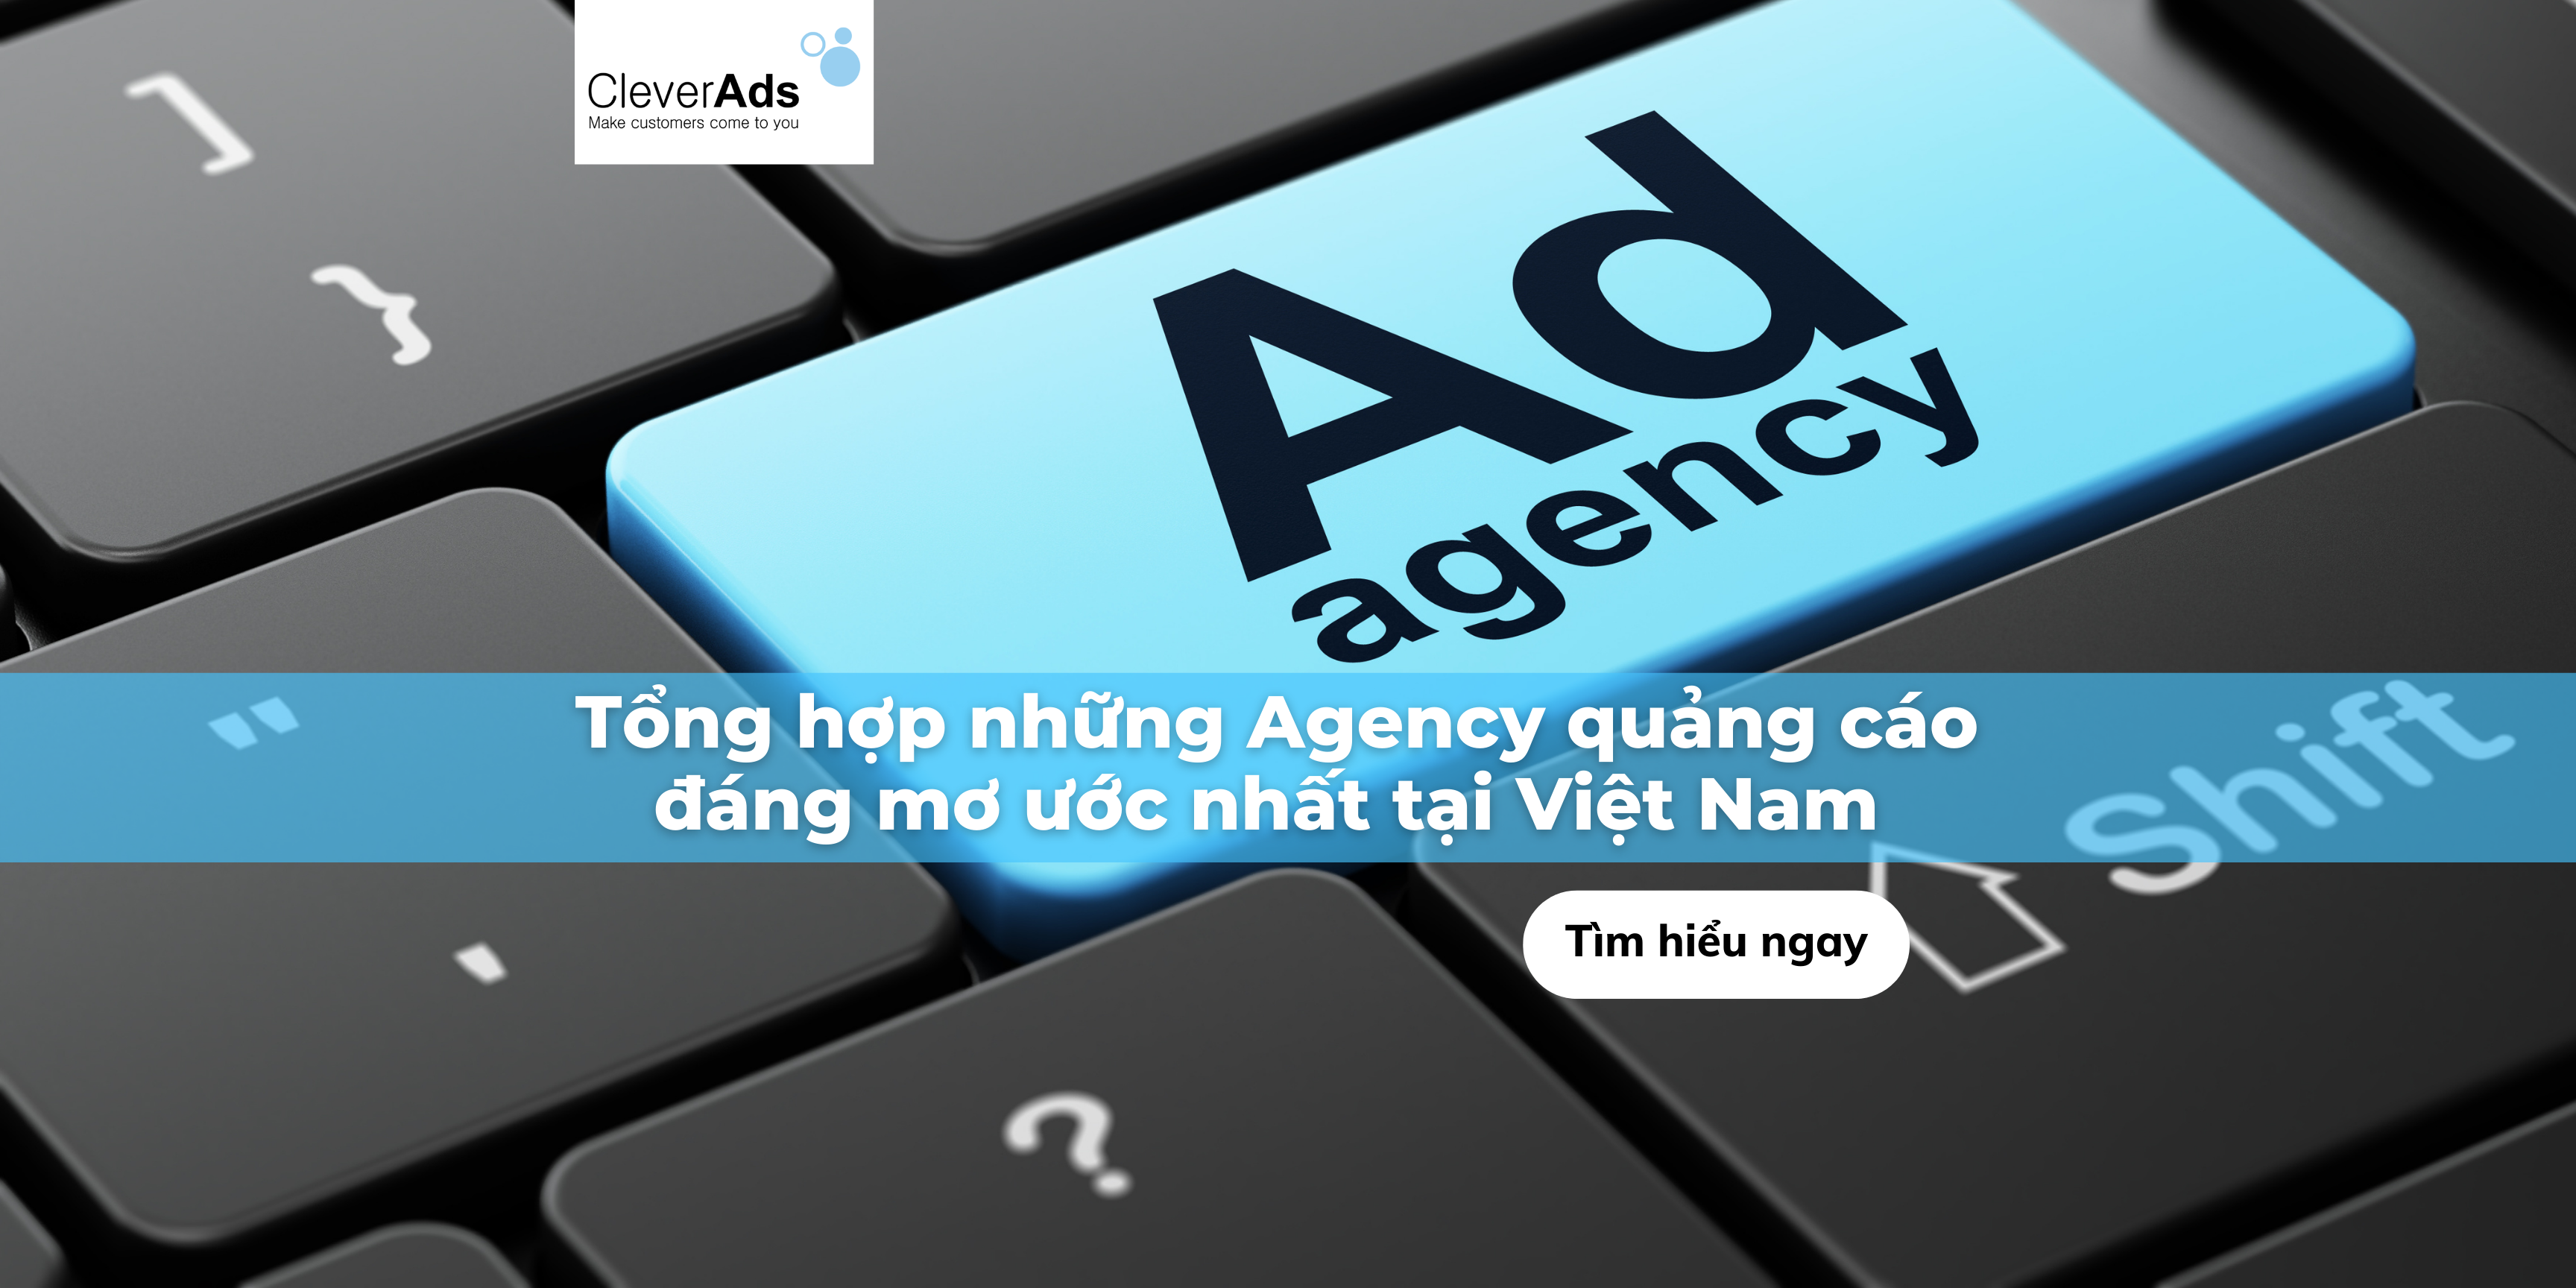 Tổng hợp những Agency quảng cáo đáng mơ ước nhất tại Việt Nam